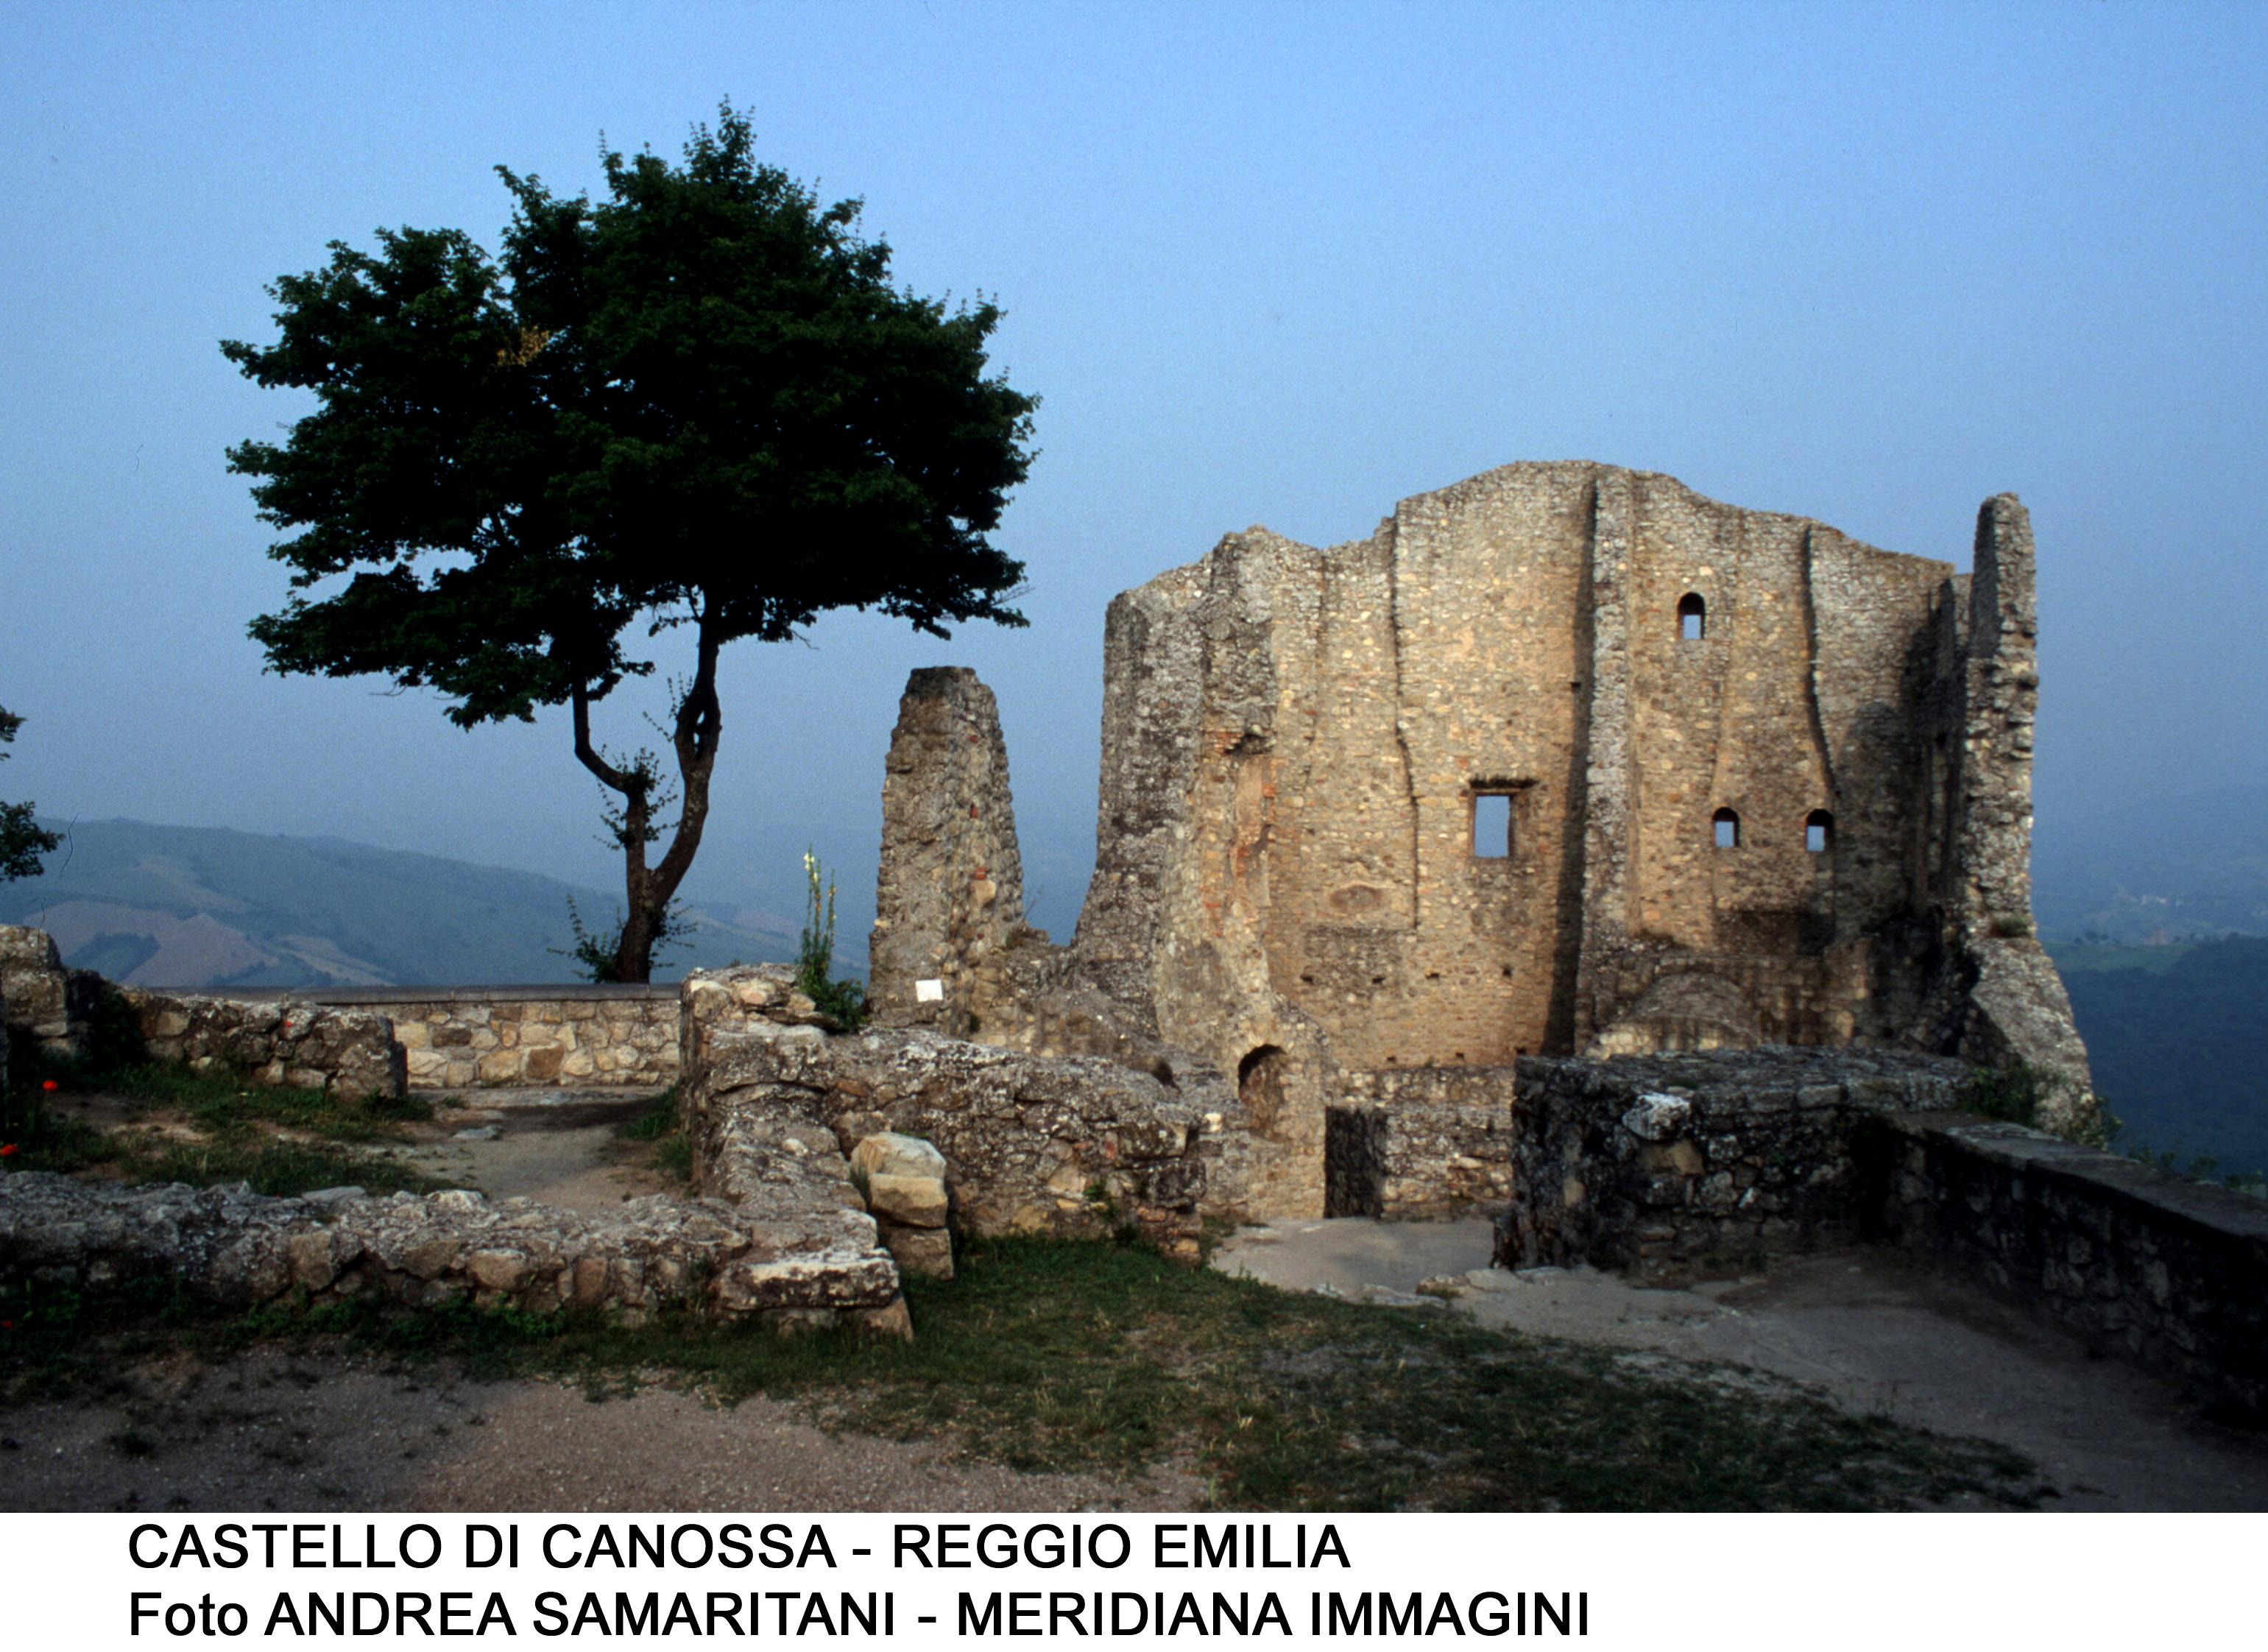  Immagine CANOSSA / CASTELLO DI CANOSSA